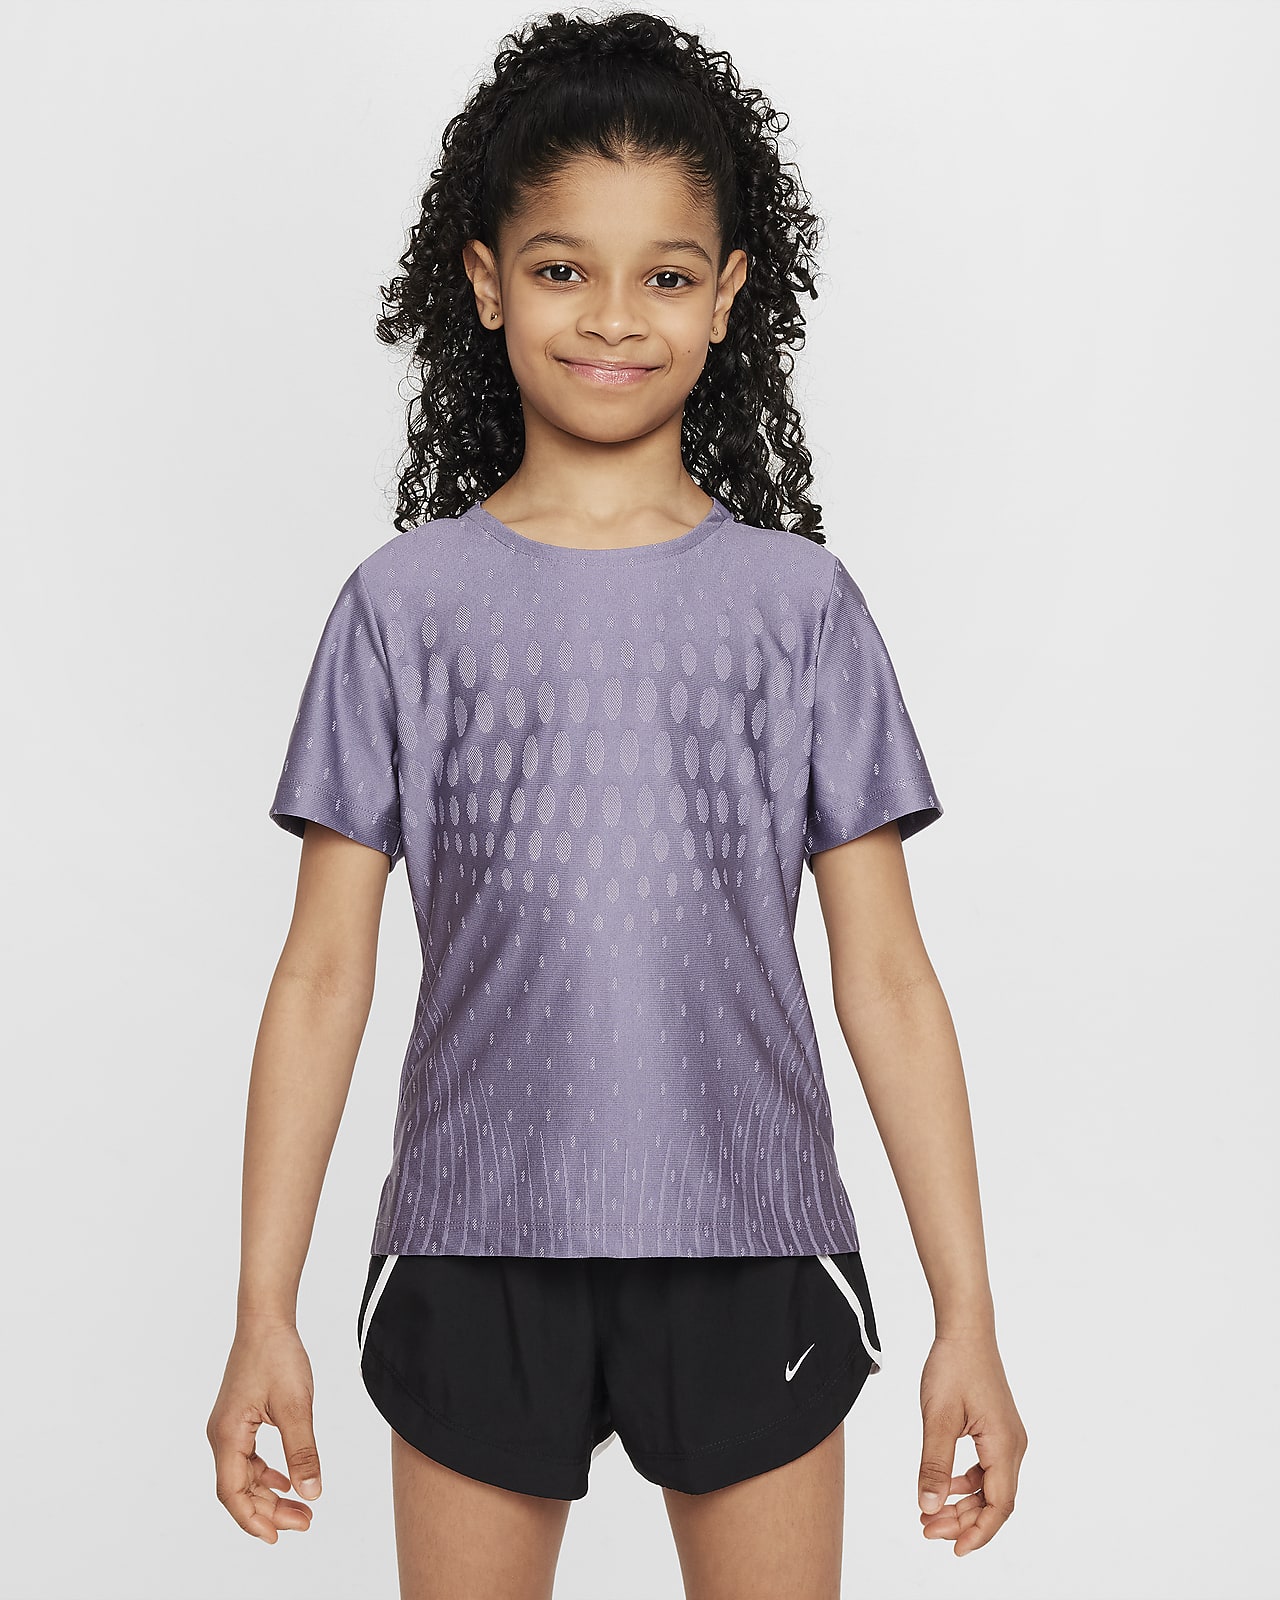 Tričko Nike Dri-FIT ADV s krátkým rukávem pro větší děti (dívky)